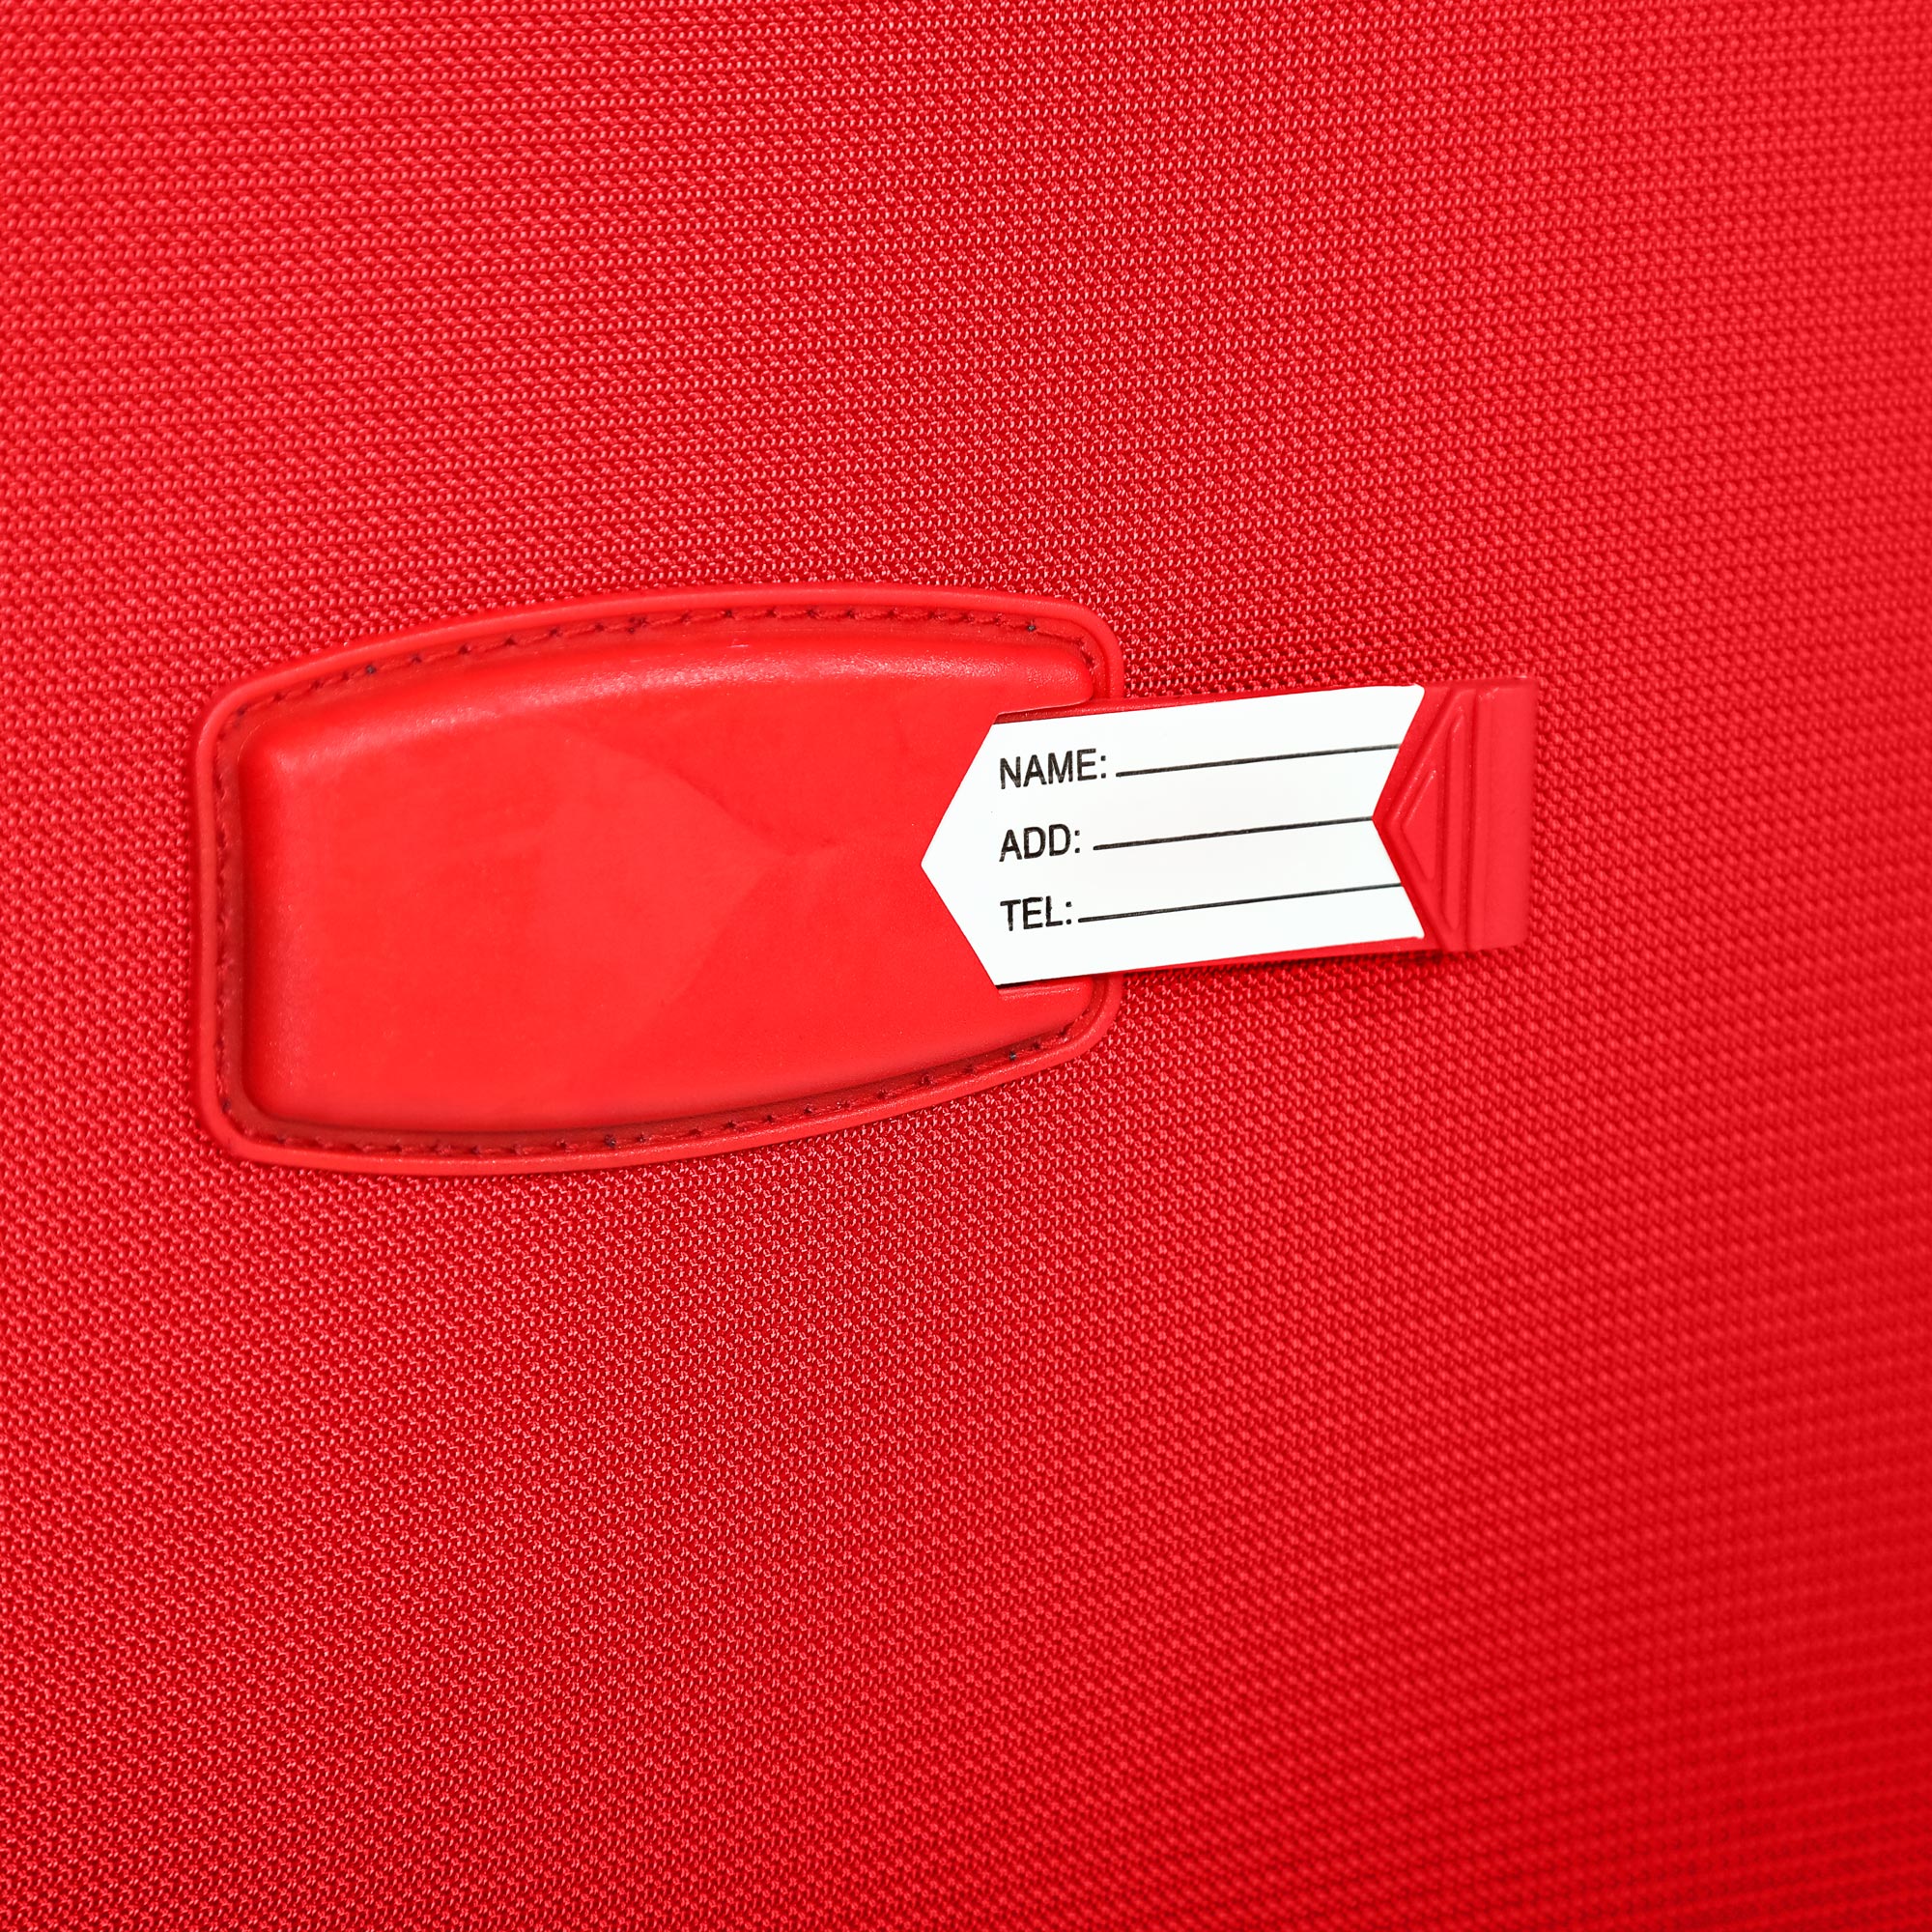 Чемодан красный Travelink ультралегкий S 36x22x55 см, размер S - фото 15